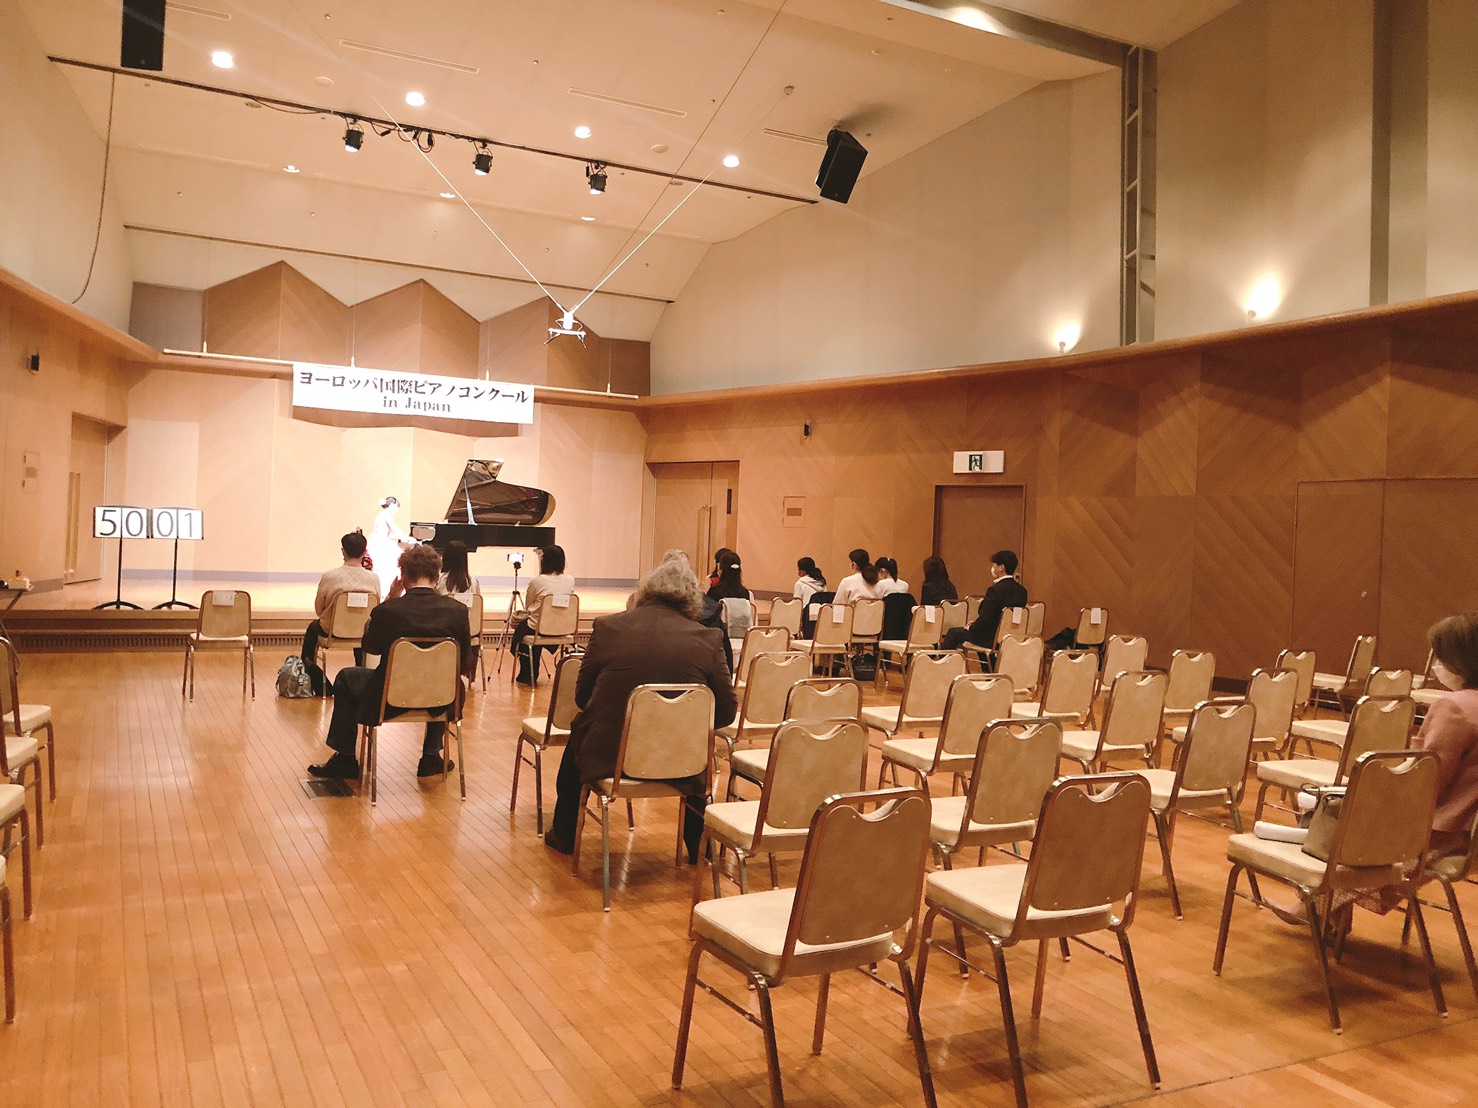 第11回ヨーロッパ国際ピアノコンクールin Japan 大阪地区大会 全国大会